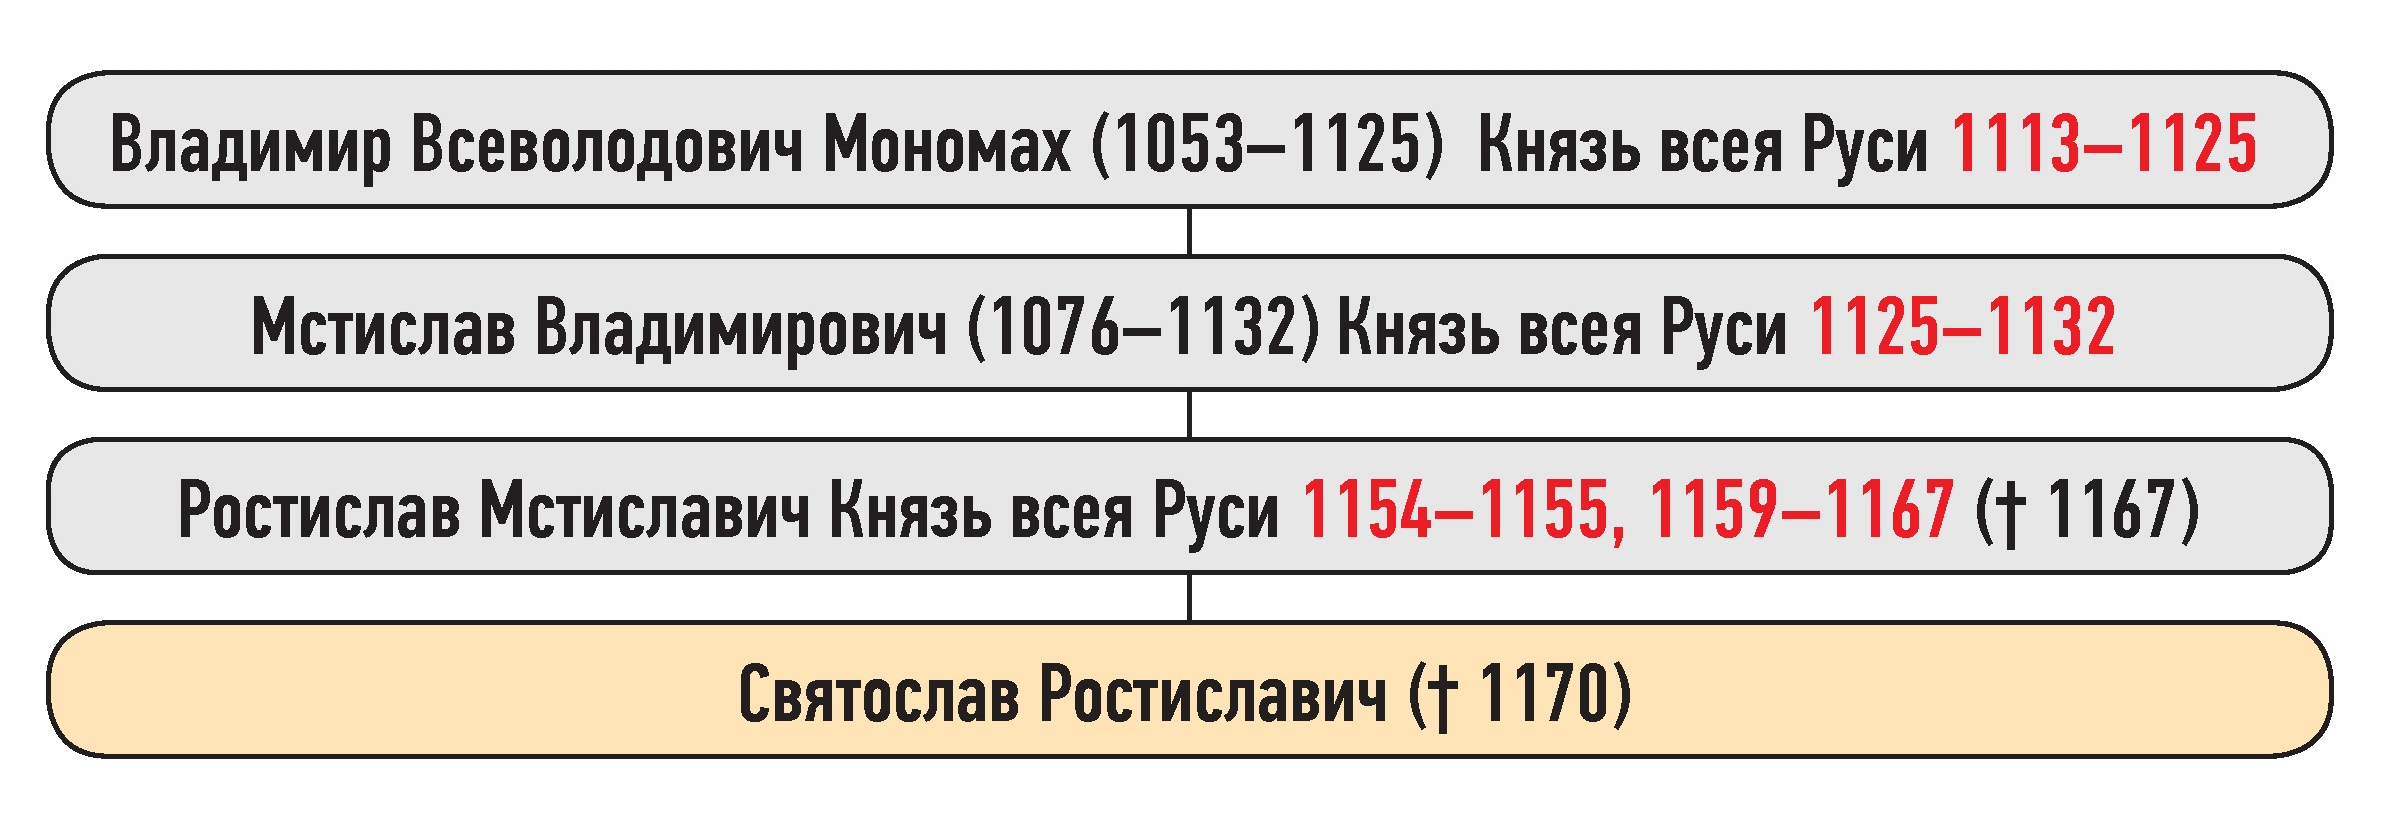 Генеалогическая схема к усобице Святослава Ростиславича и жителей Новгорода в 1160 г.